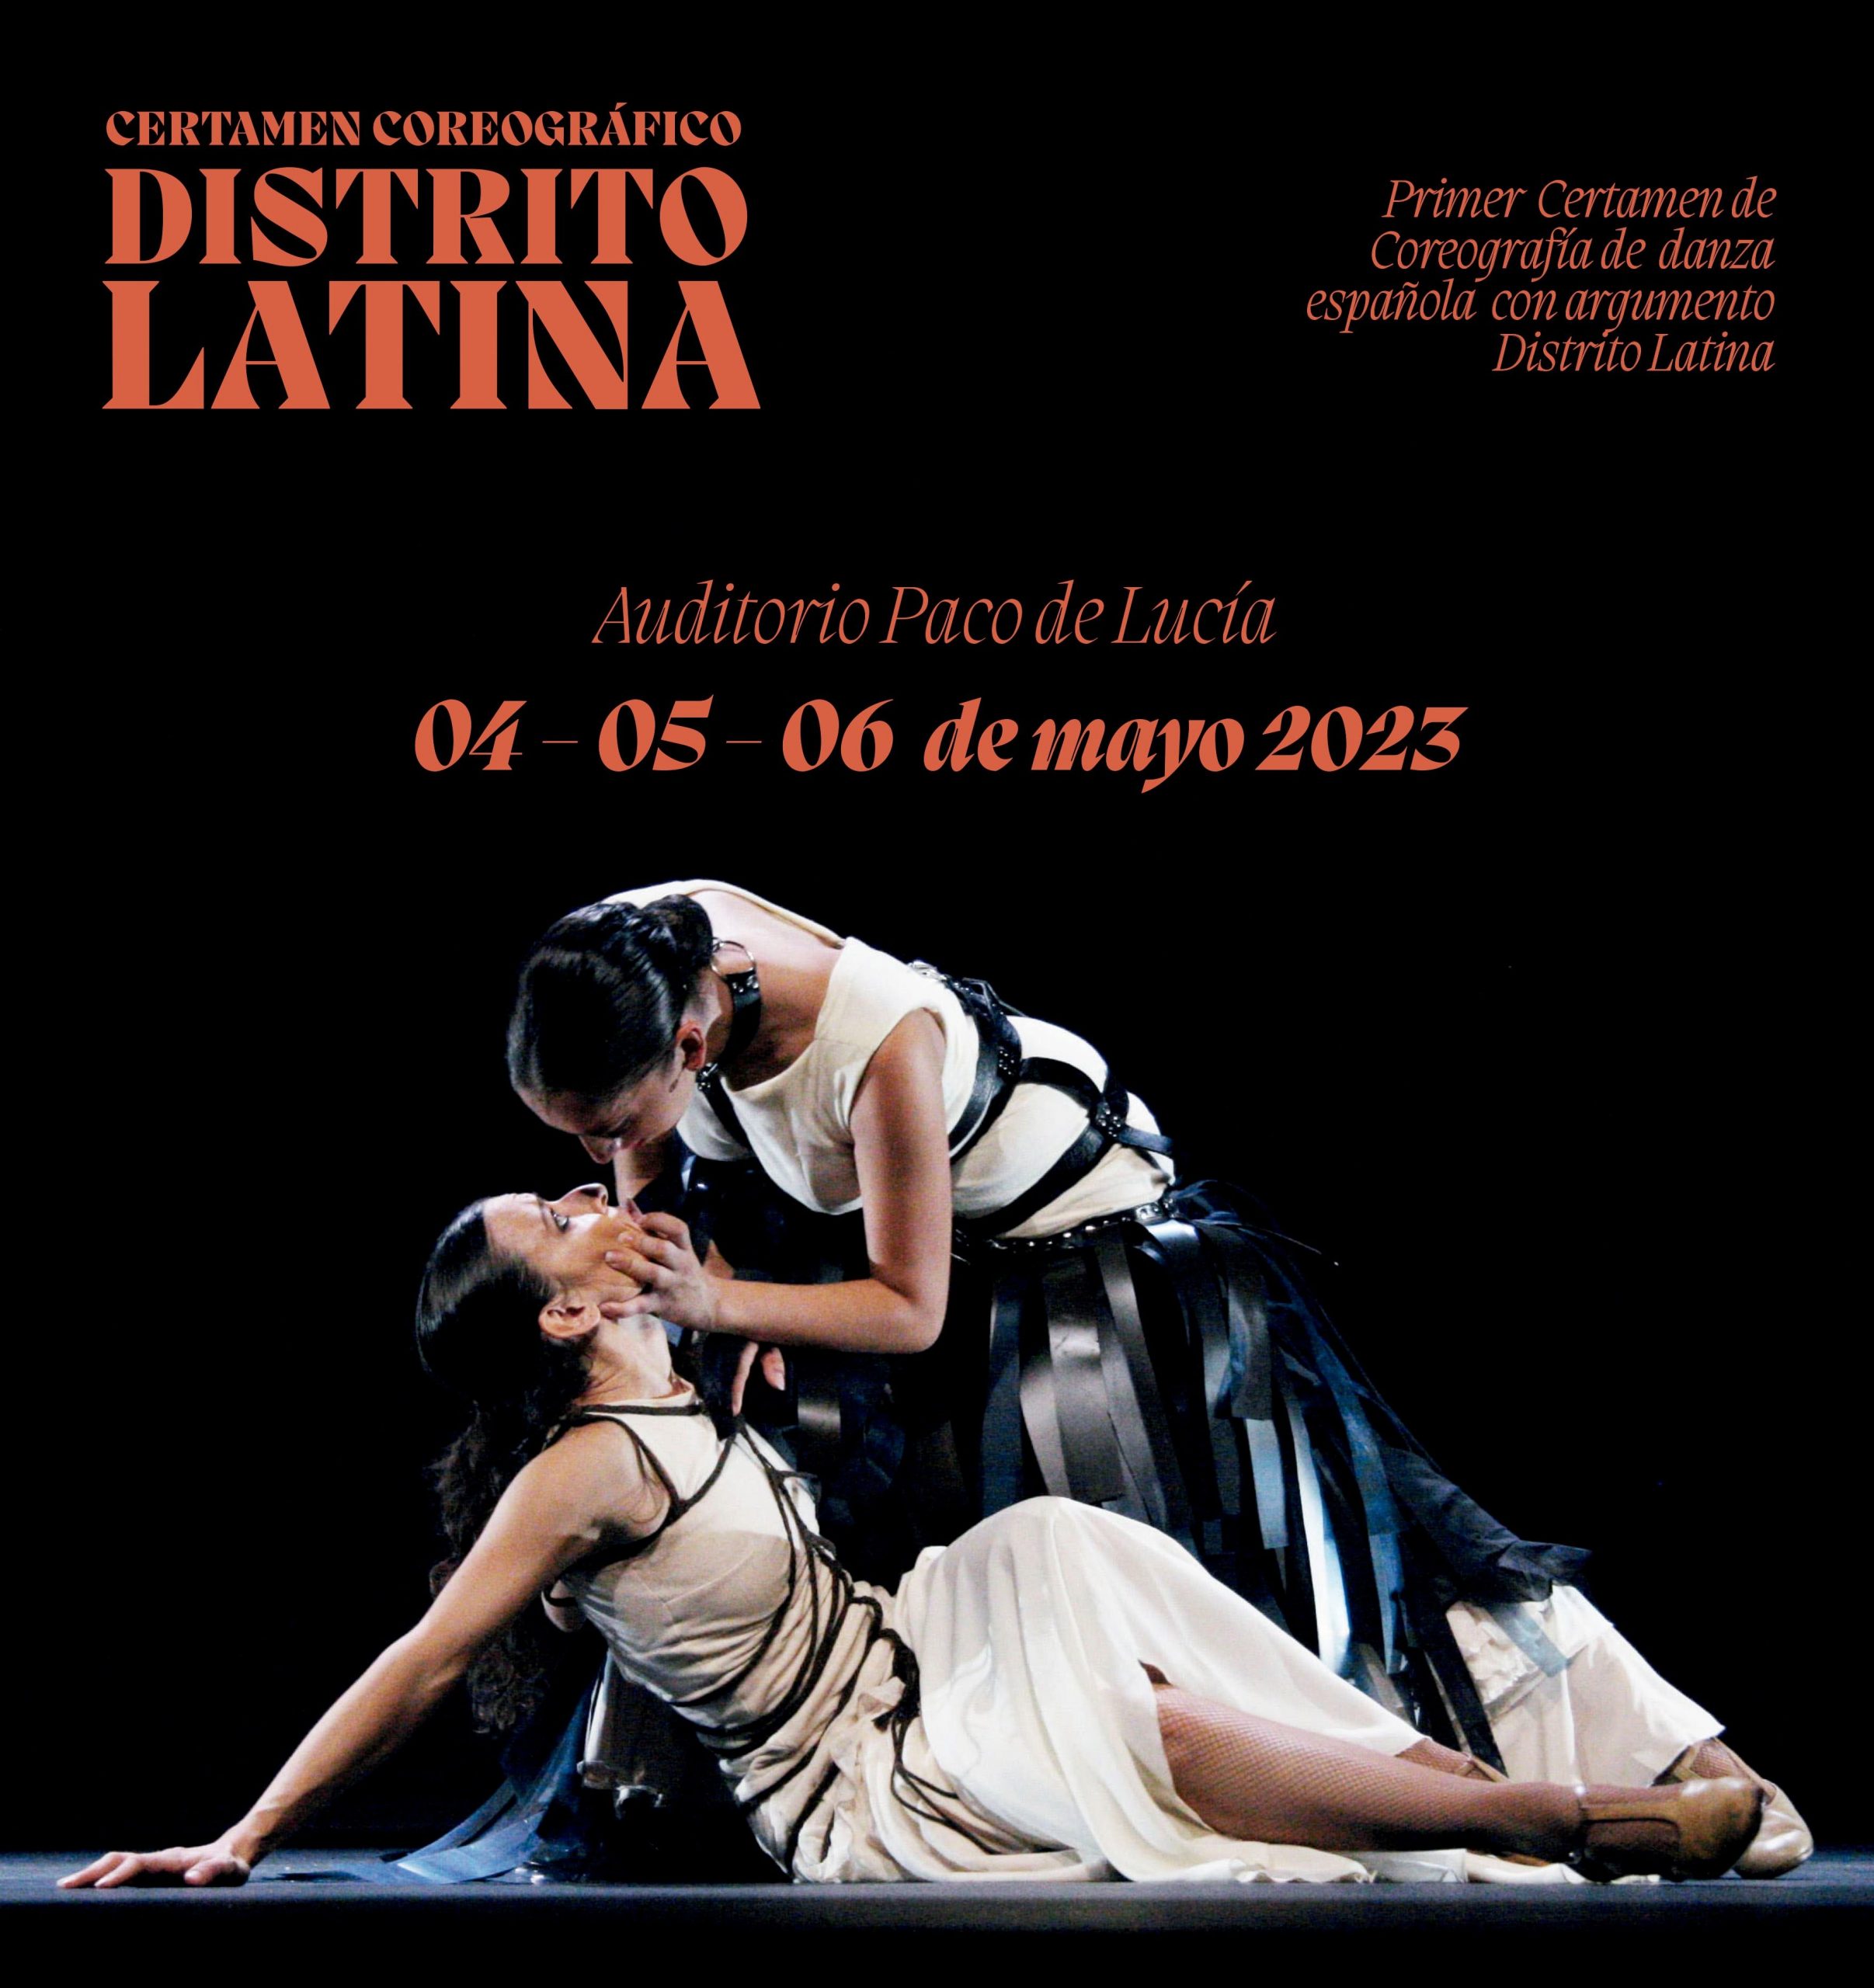 detalle del cartel del certamen coreográfico del distrito de Latina